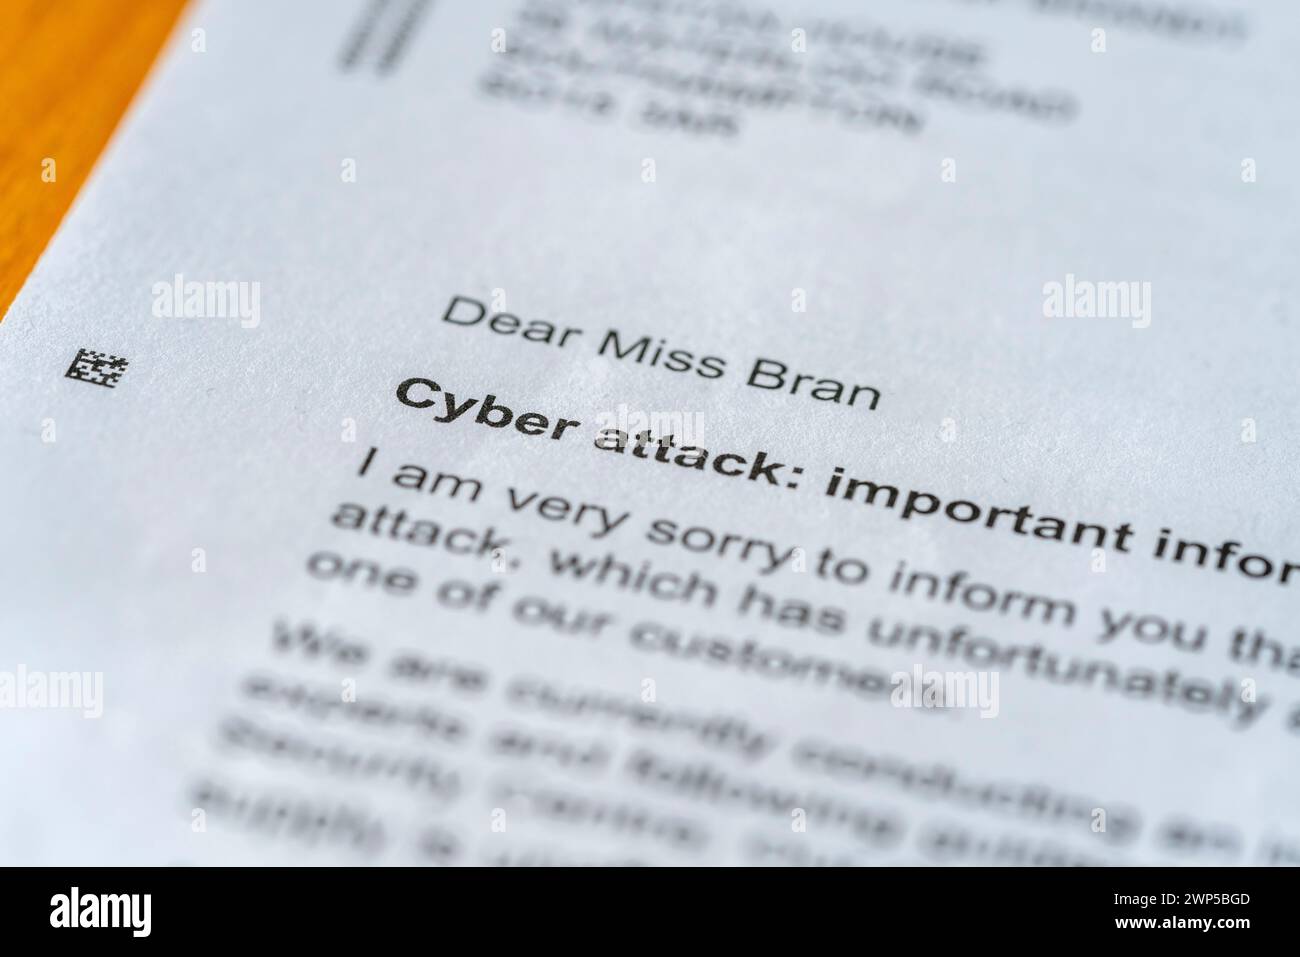 Une lettre informant un client d'une cyberattaque récente, Angleterre, Royaume-Uni Banque D'Images